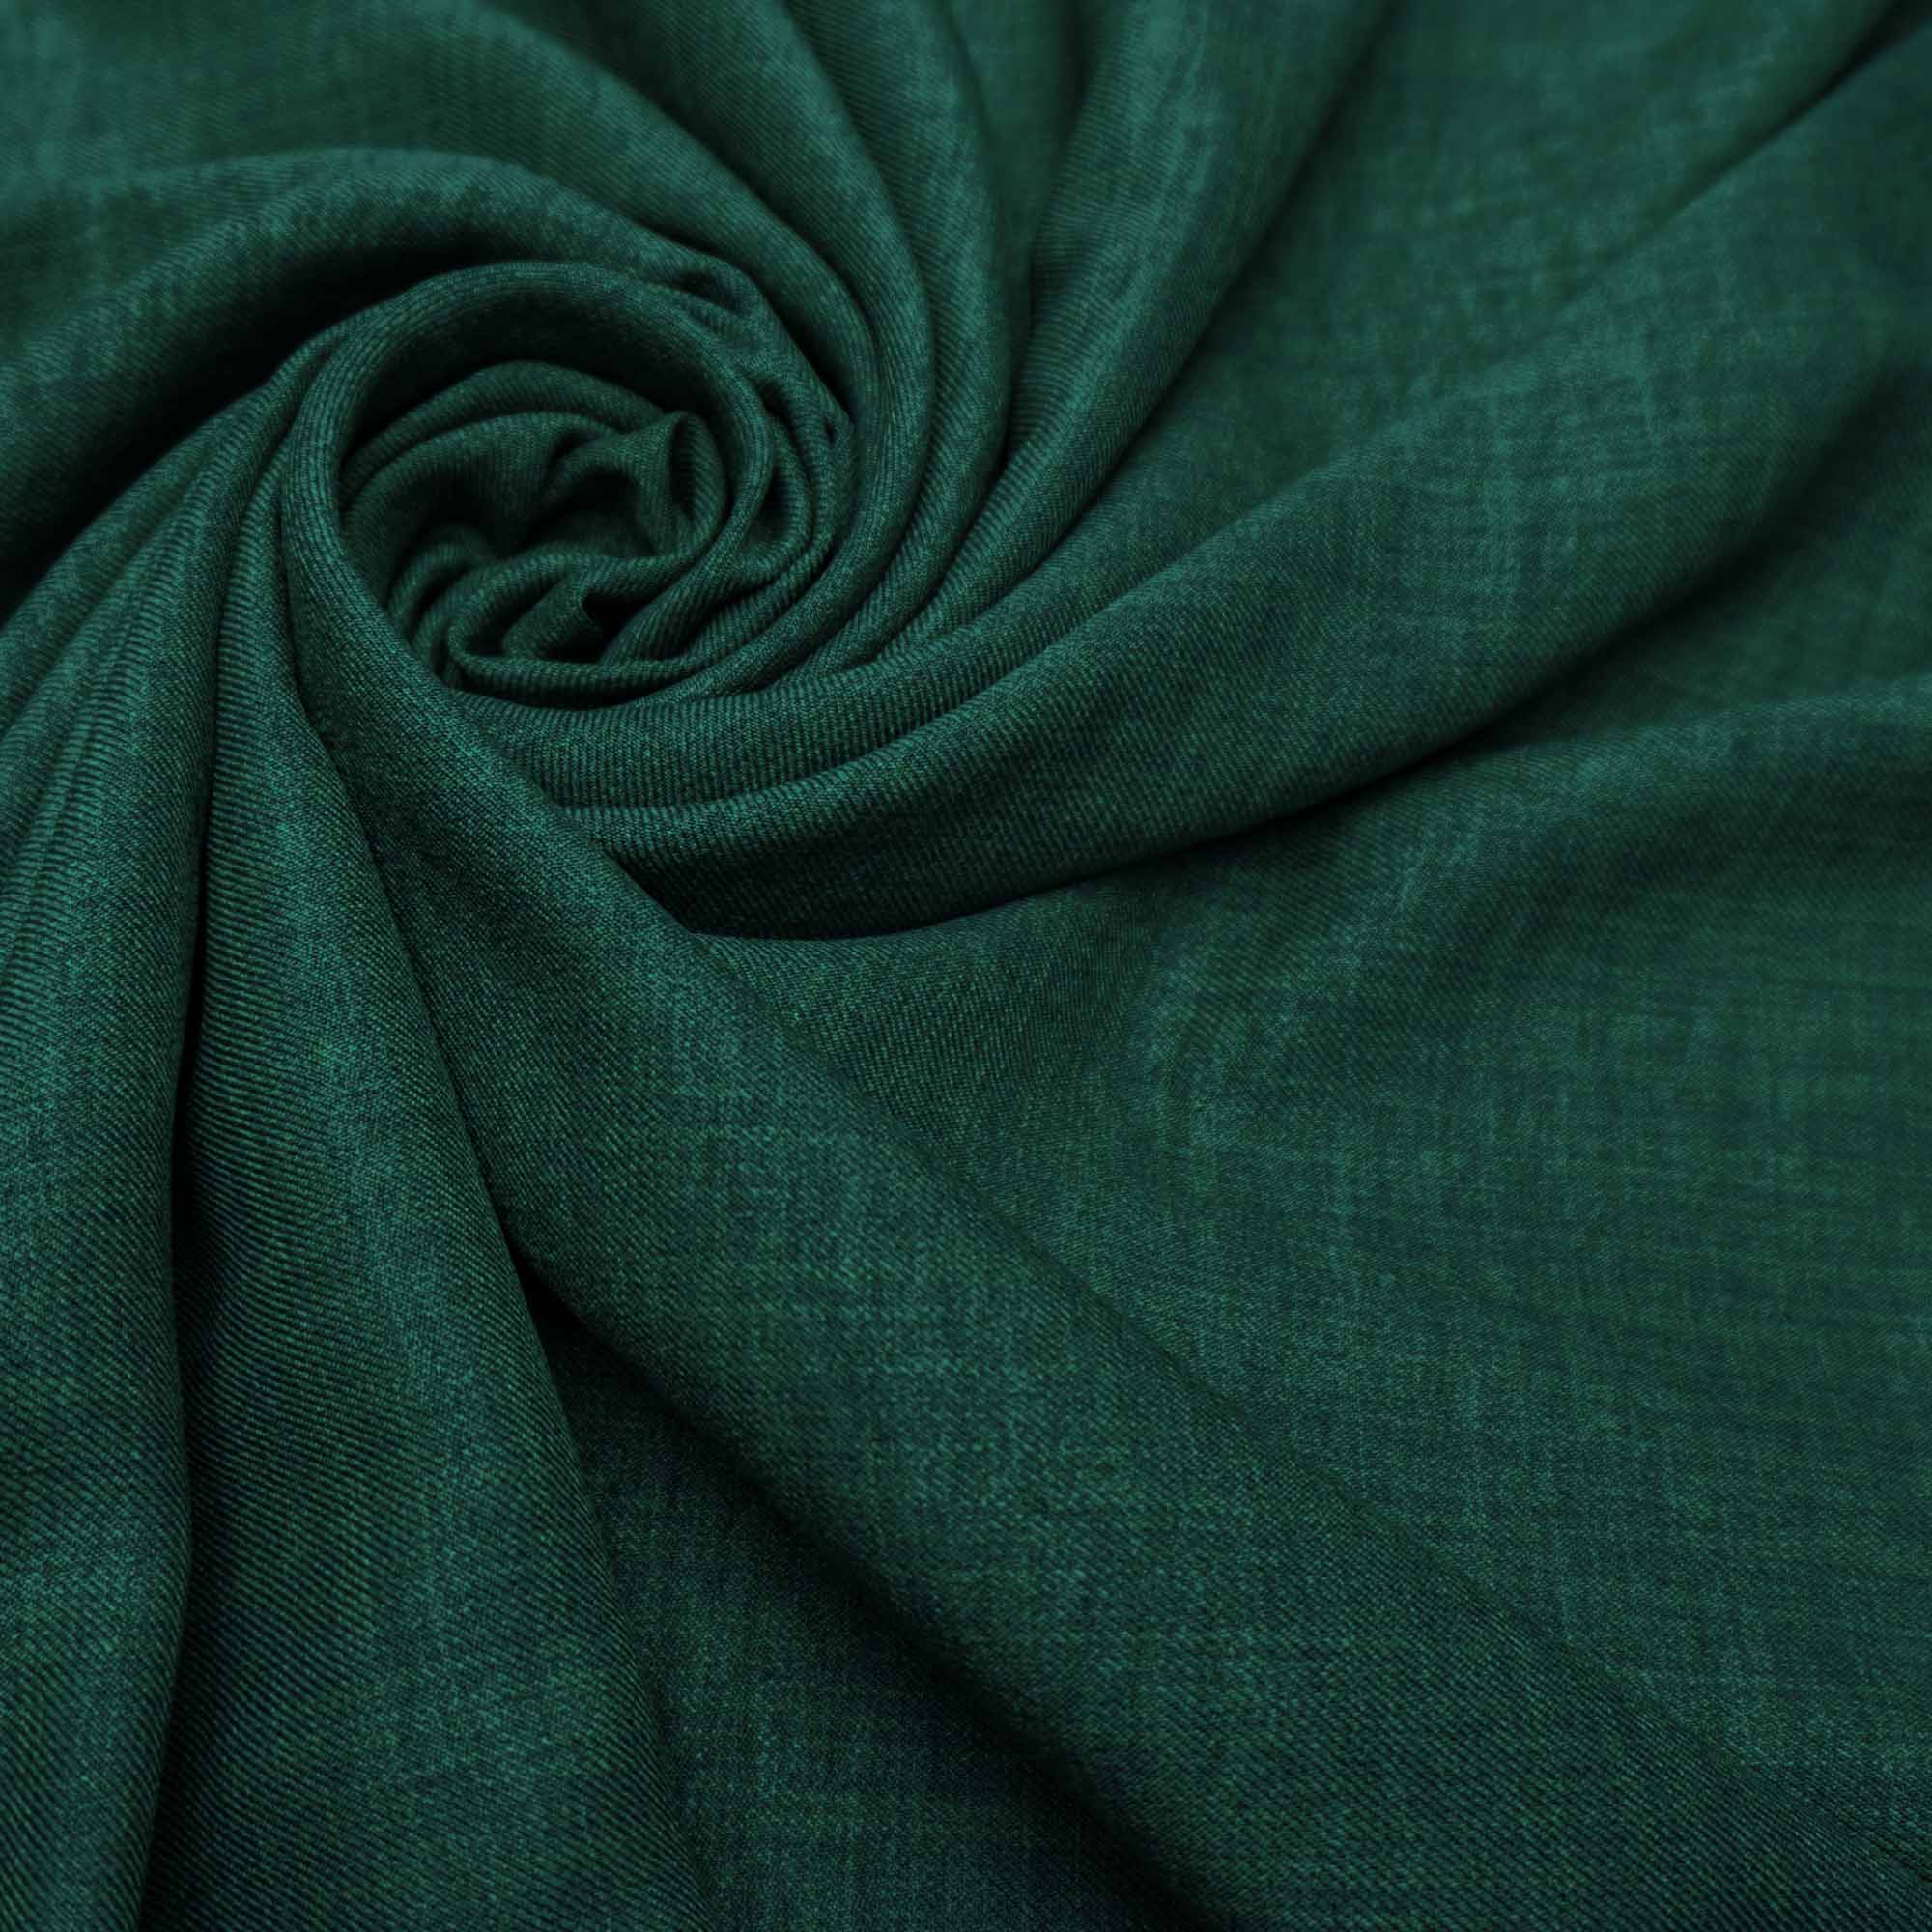 Tecido alfaiataria com textura de linho verde esmeralda